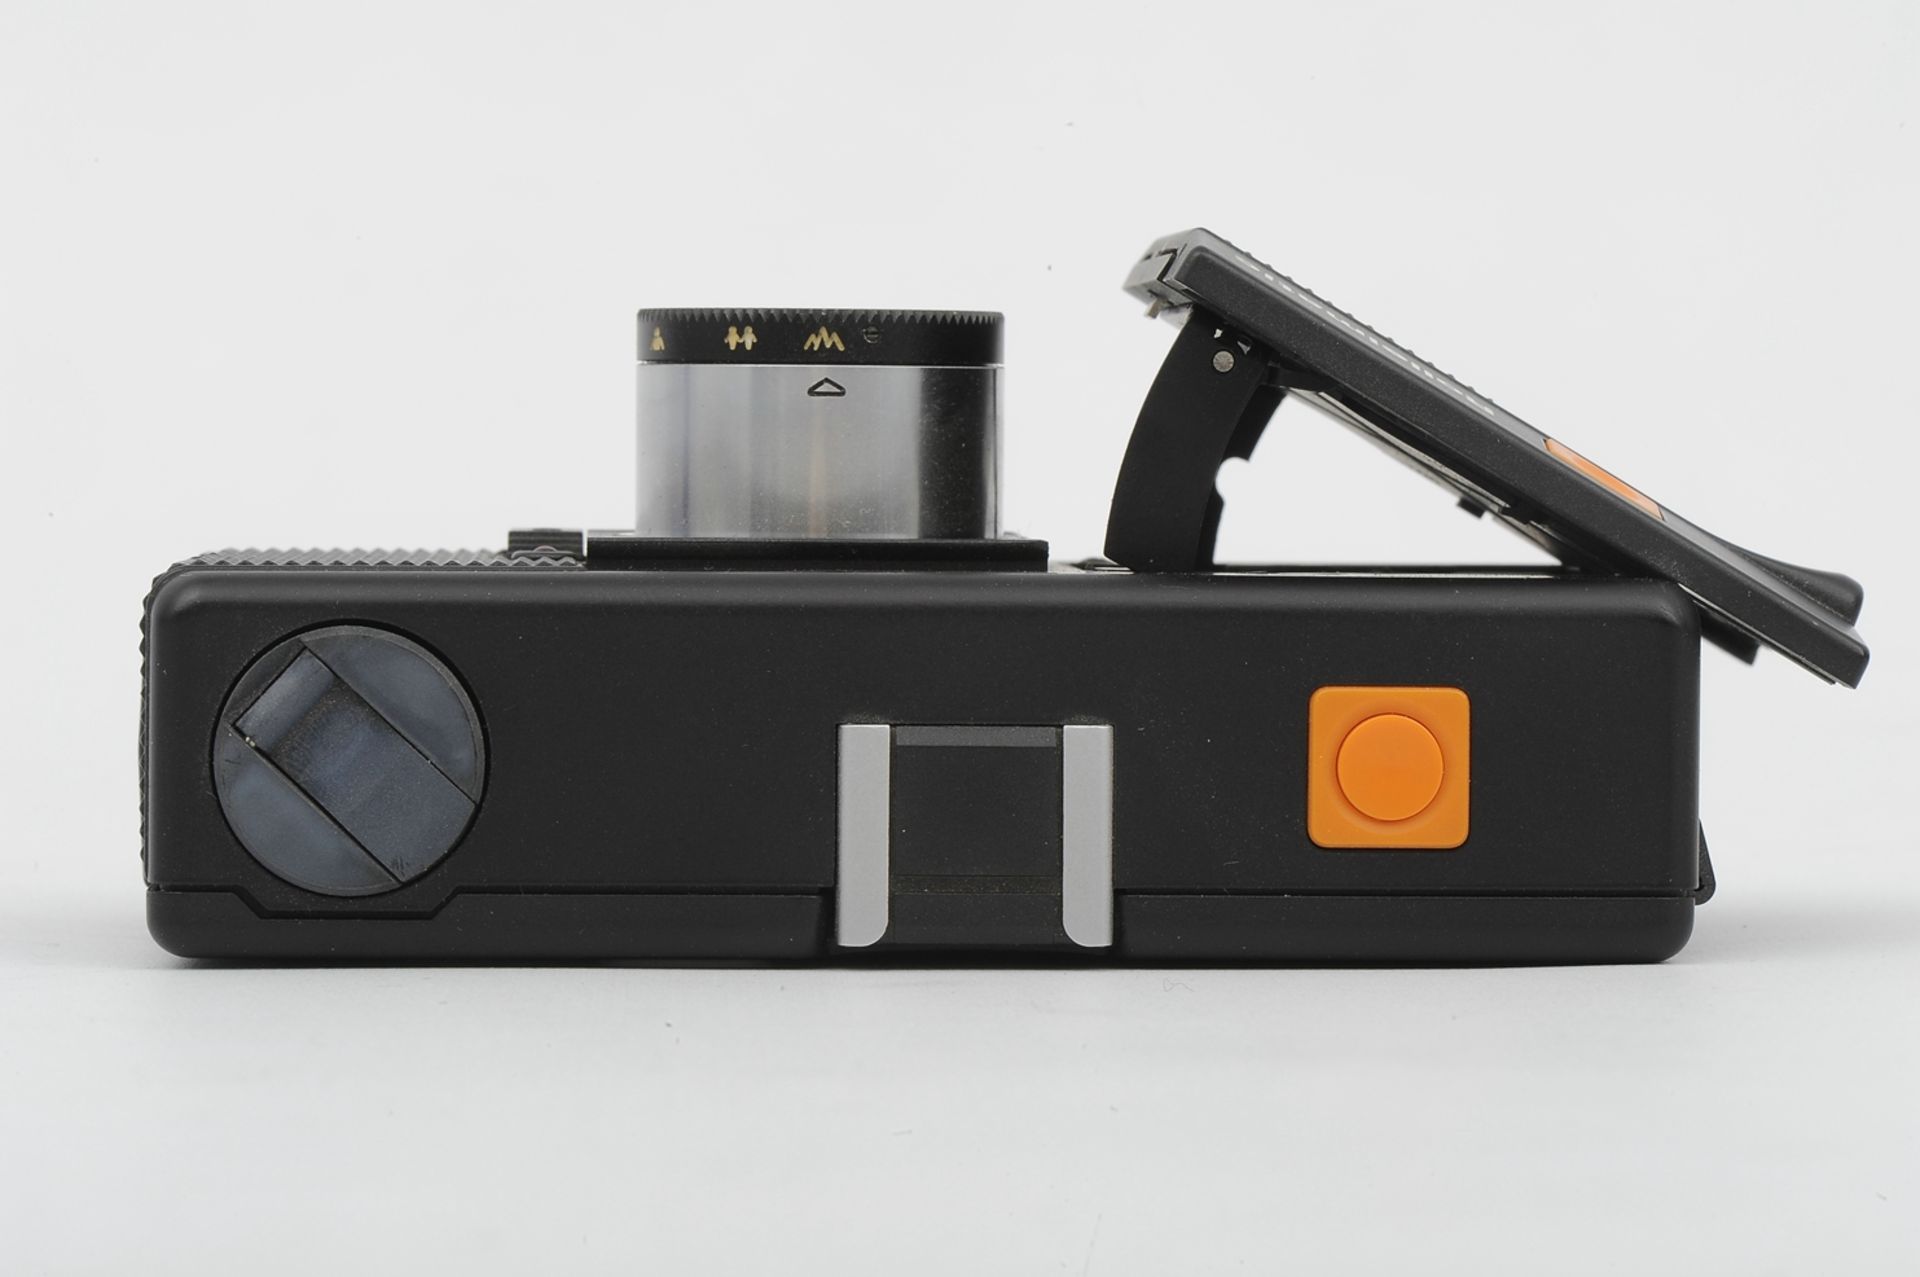 6teiliges Konvolut "ROLLEI" - Kameras und Zubehör, bestehend aus: 1 x 35T (unvollendete Reparatur), - Image 10 of 19